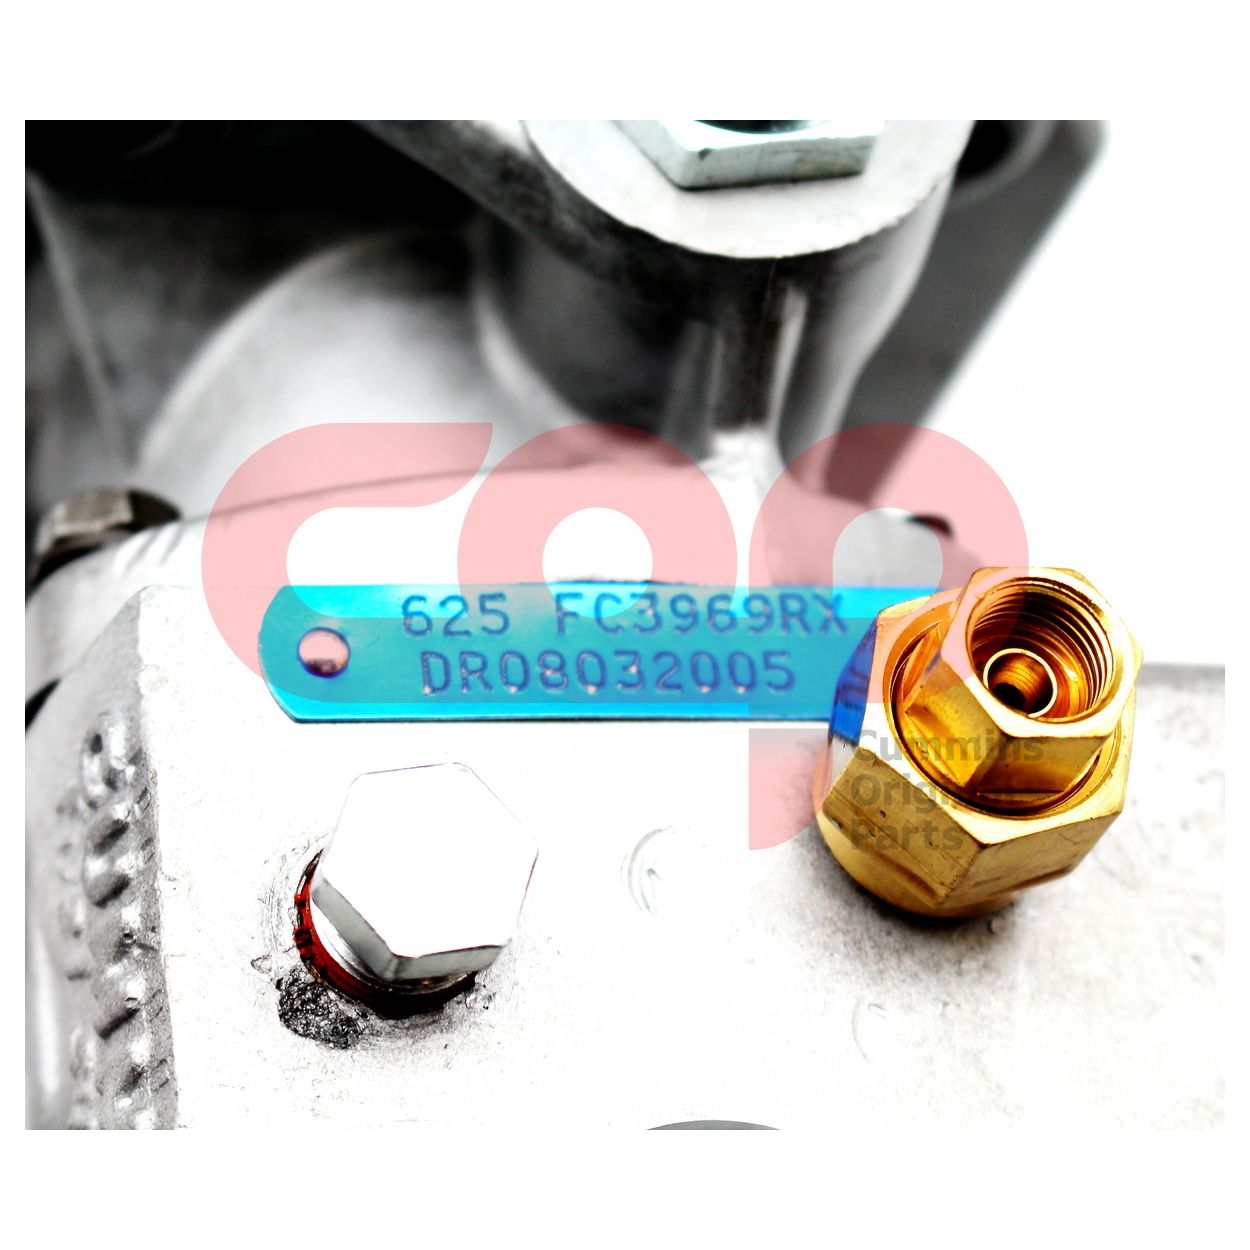 Топливный насос высокого давления (ТНВД) для двигателя Cummins N Series FC03969RX